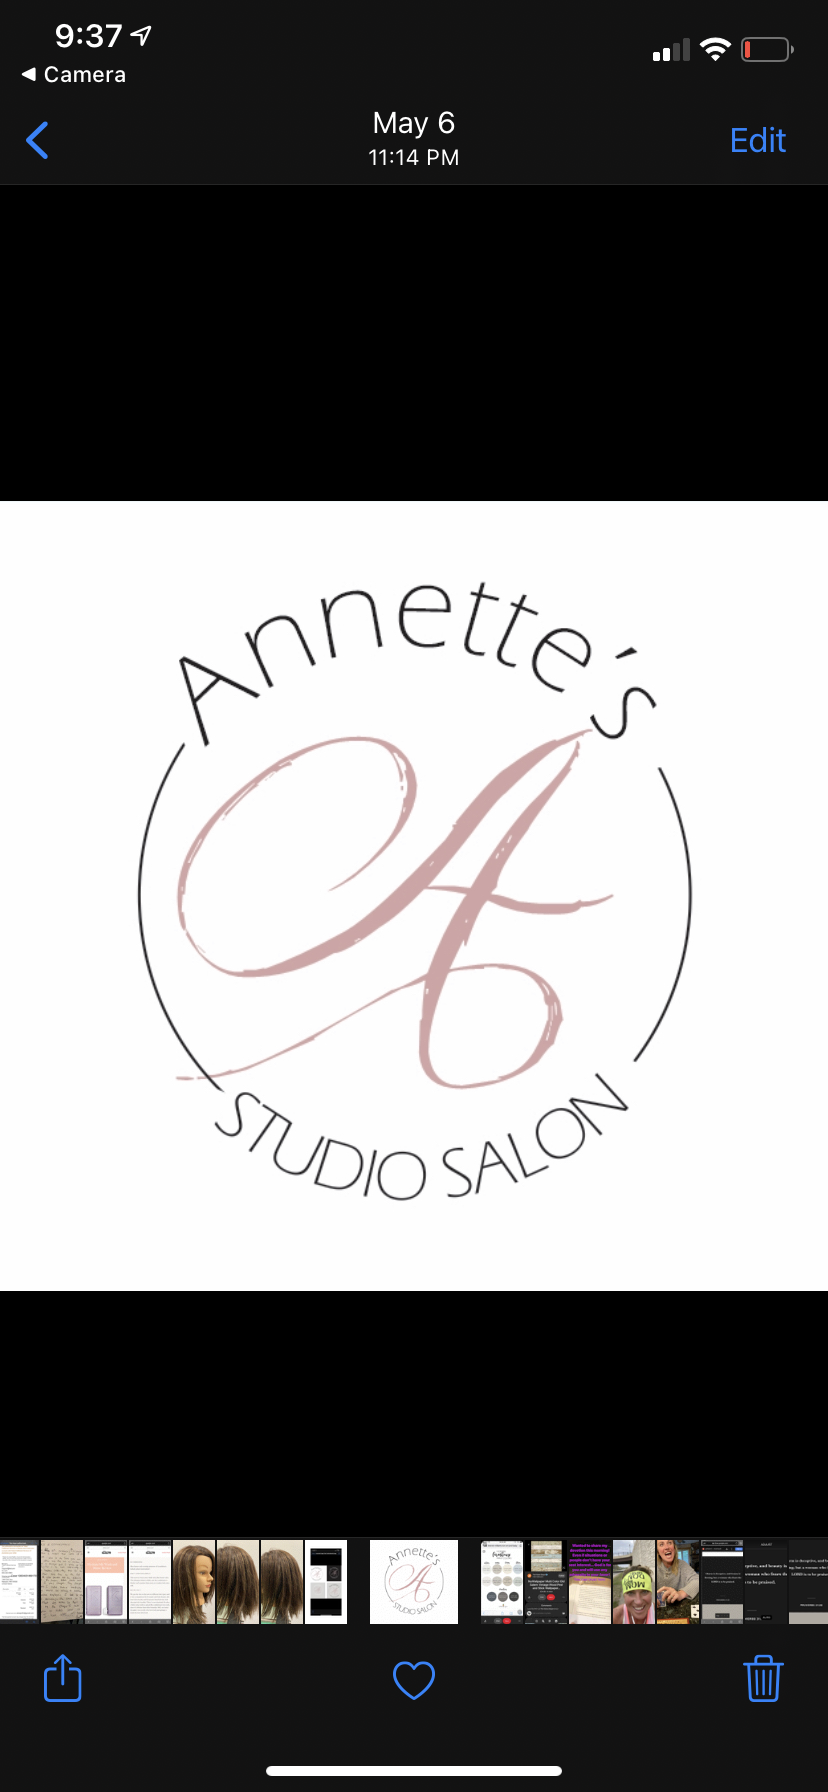 Annette�s Studio Salon